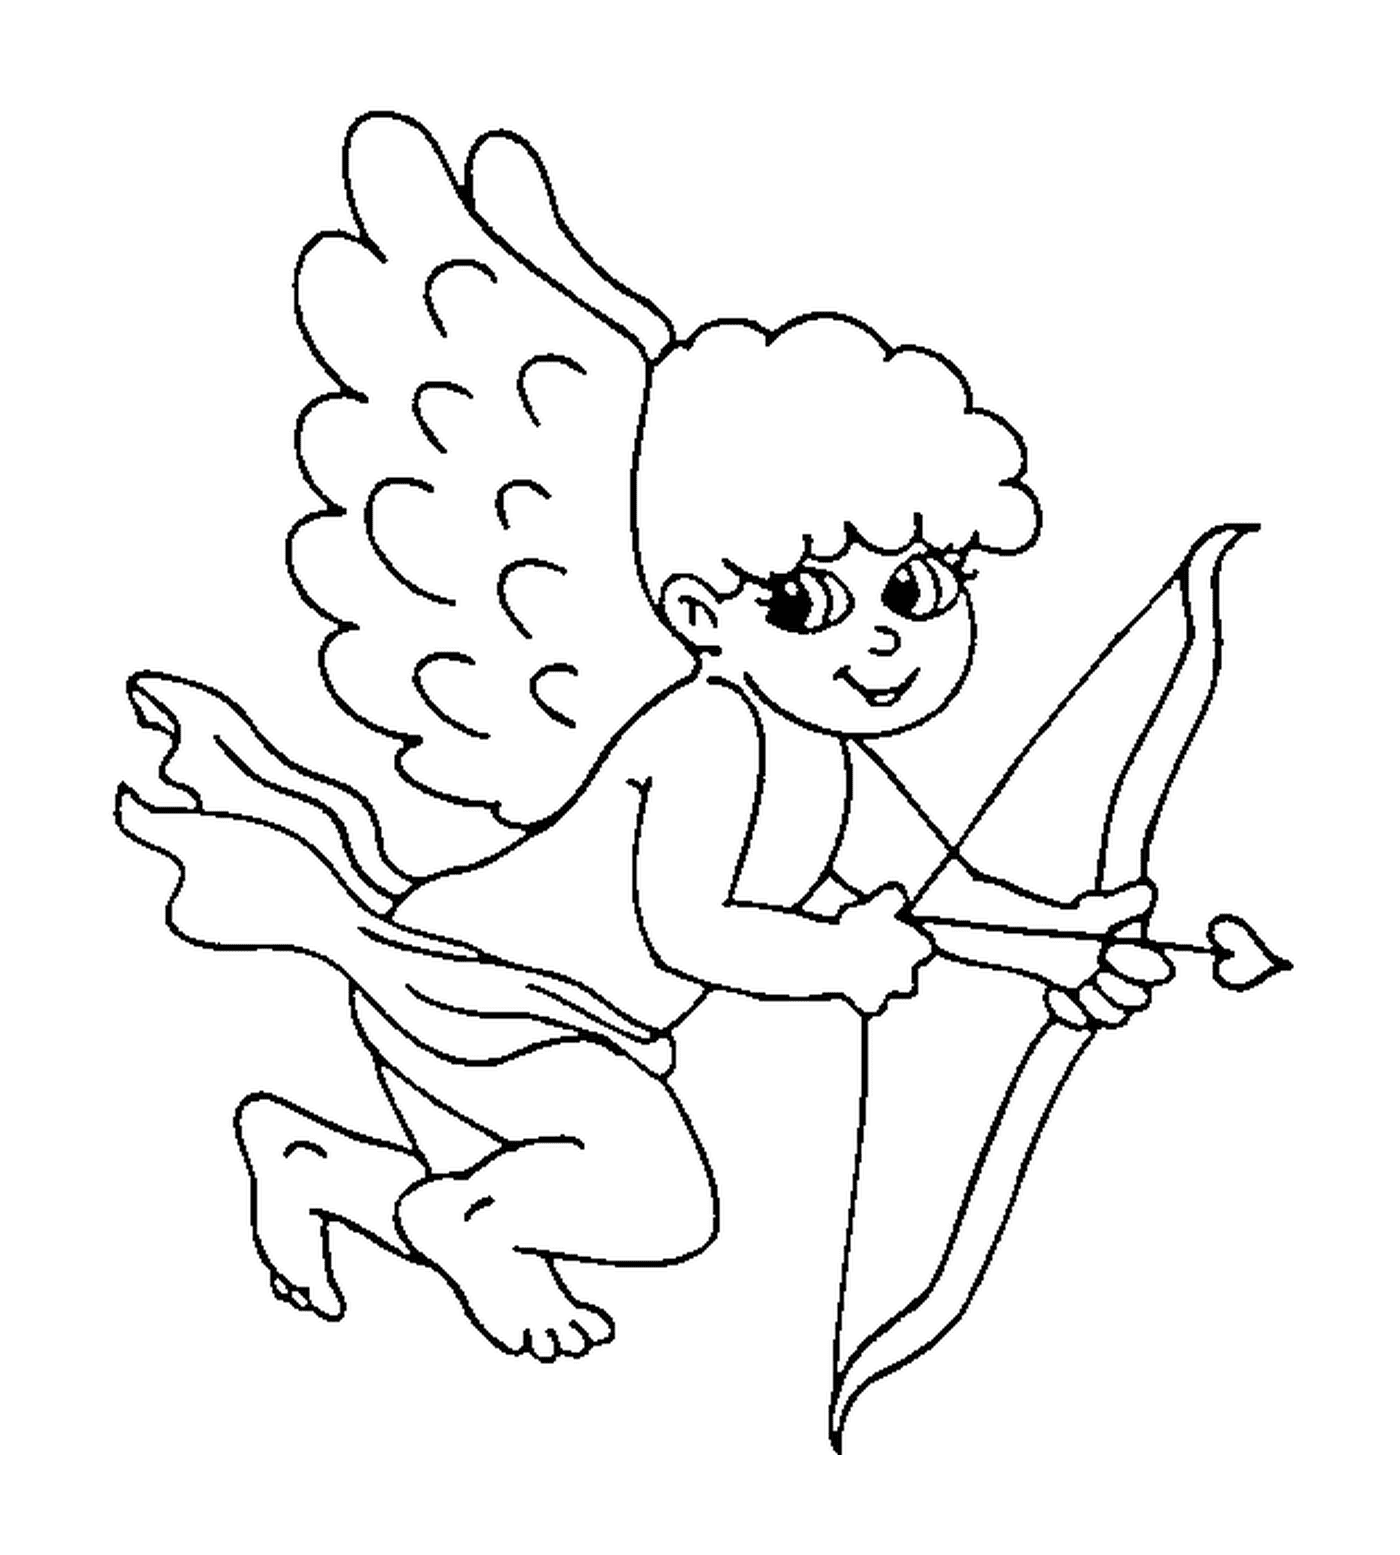  Un ángel sosteniendo un arco y una flecha 